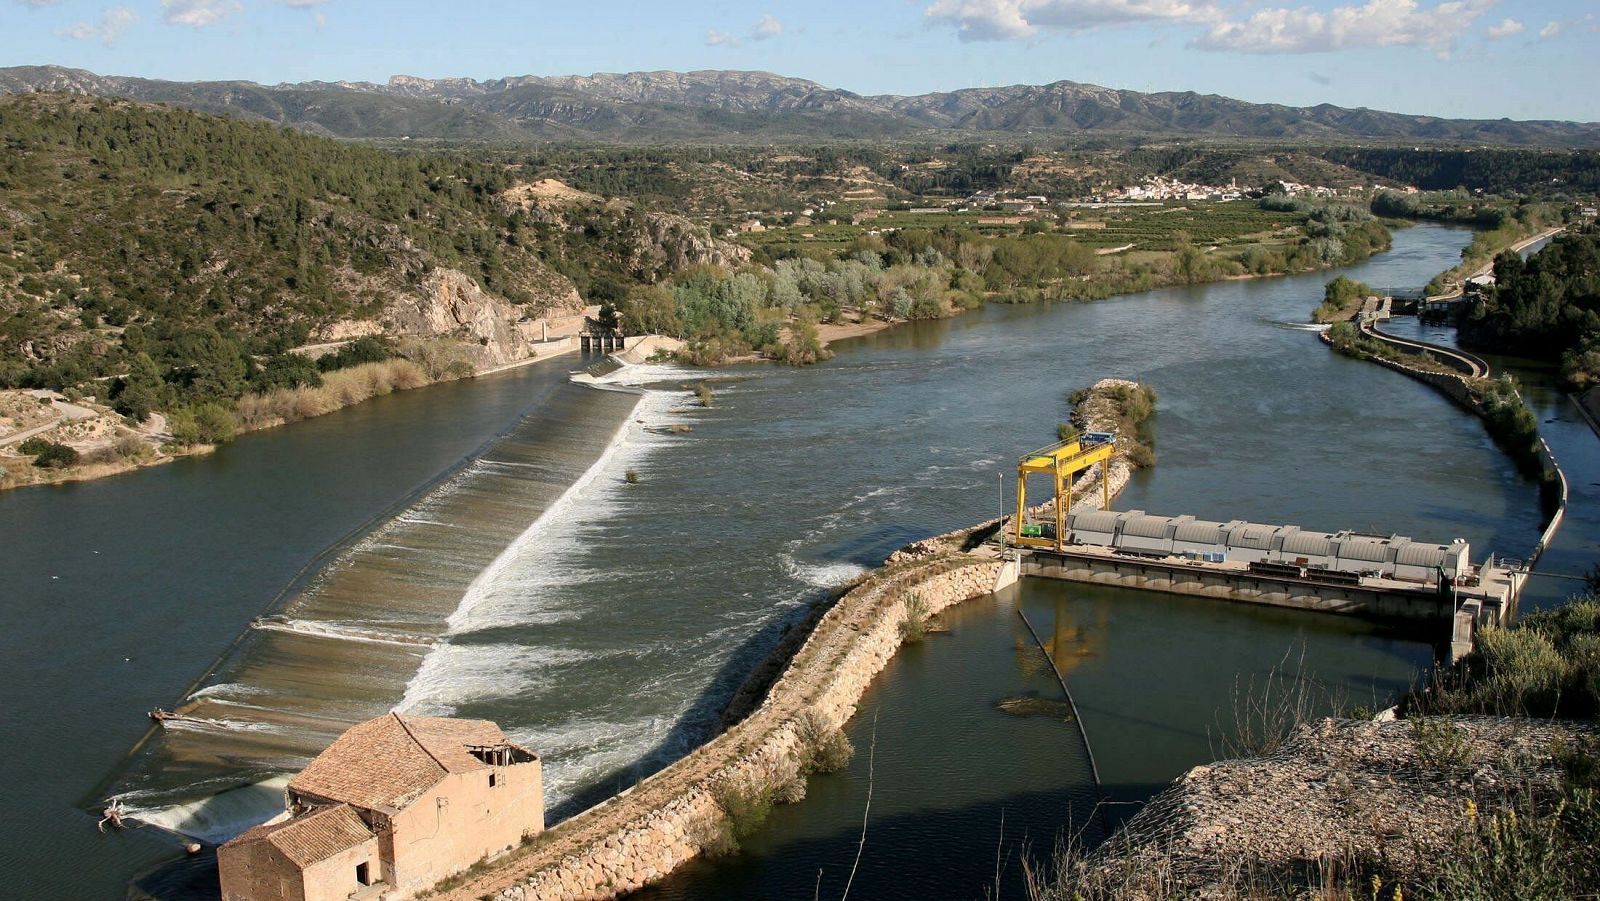 Azud de Xerta, en el Ebro. Este tipo de barreras son las más comunes en los ríos españoles